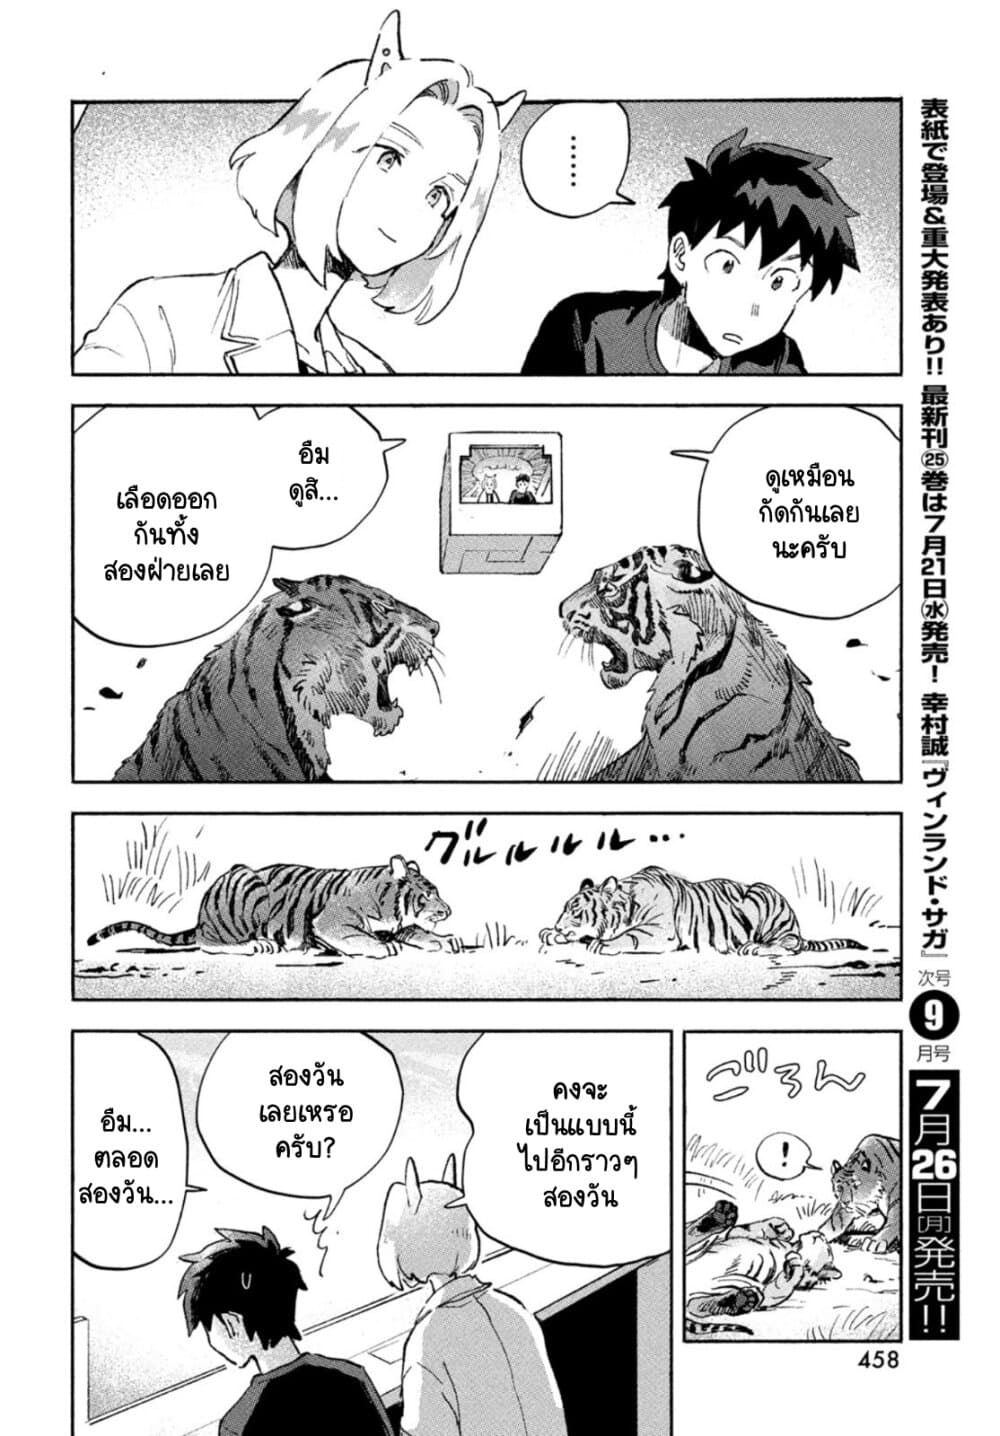 Q Koitte Nandesuka? 4-Panthera Tigris